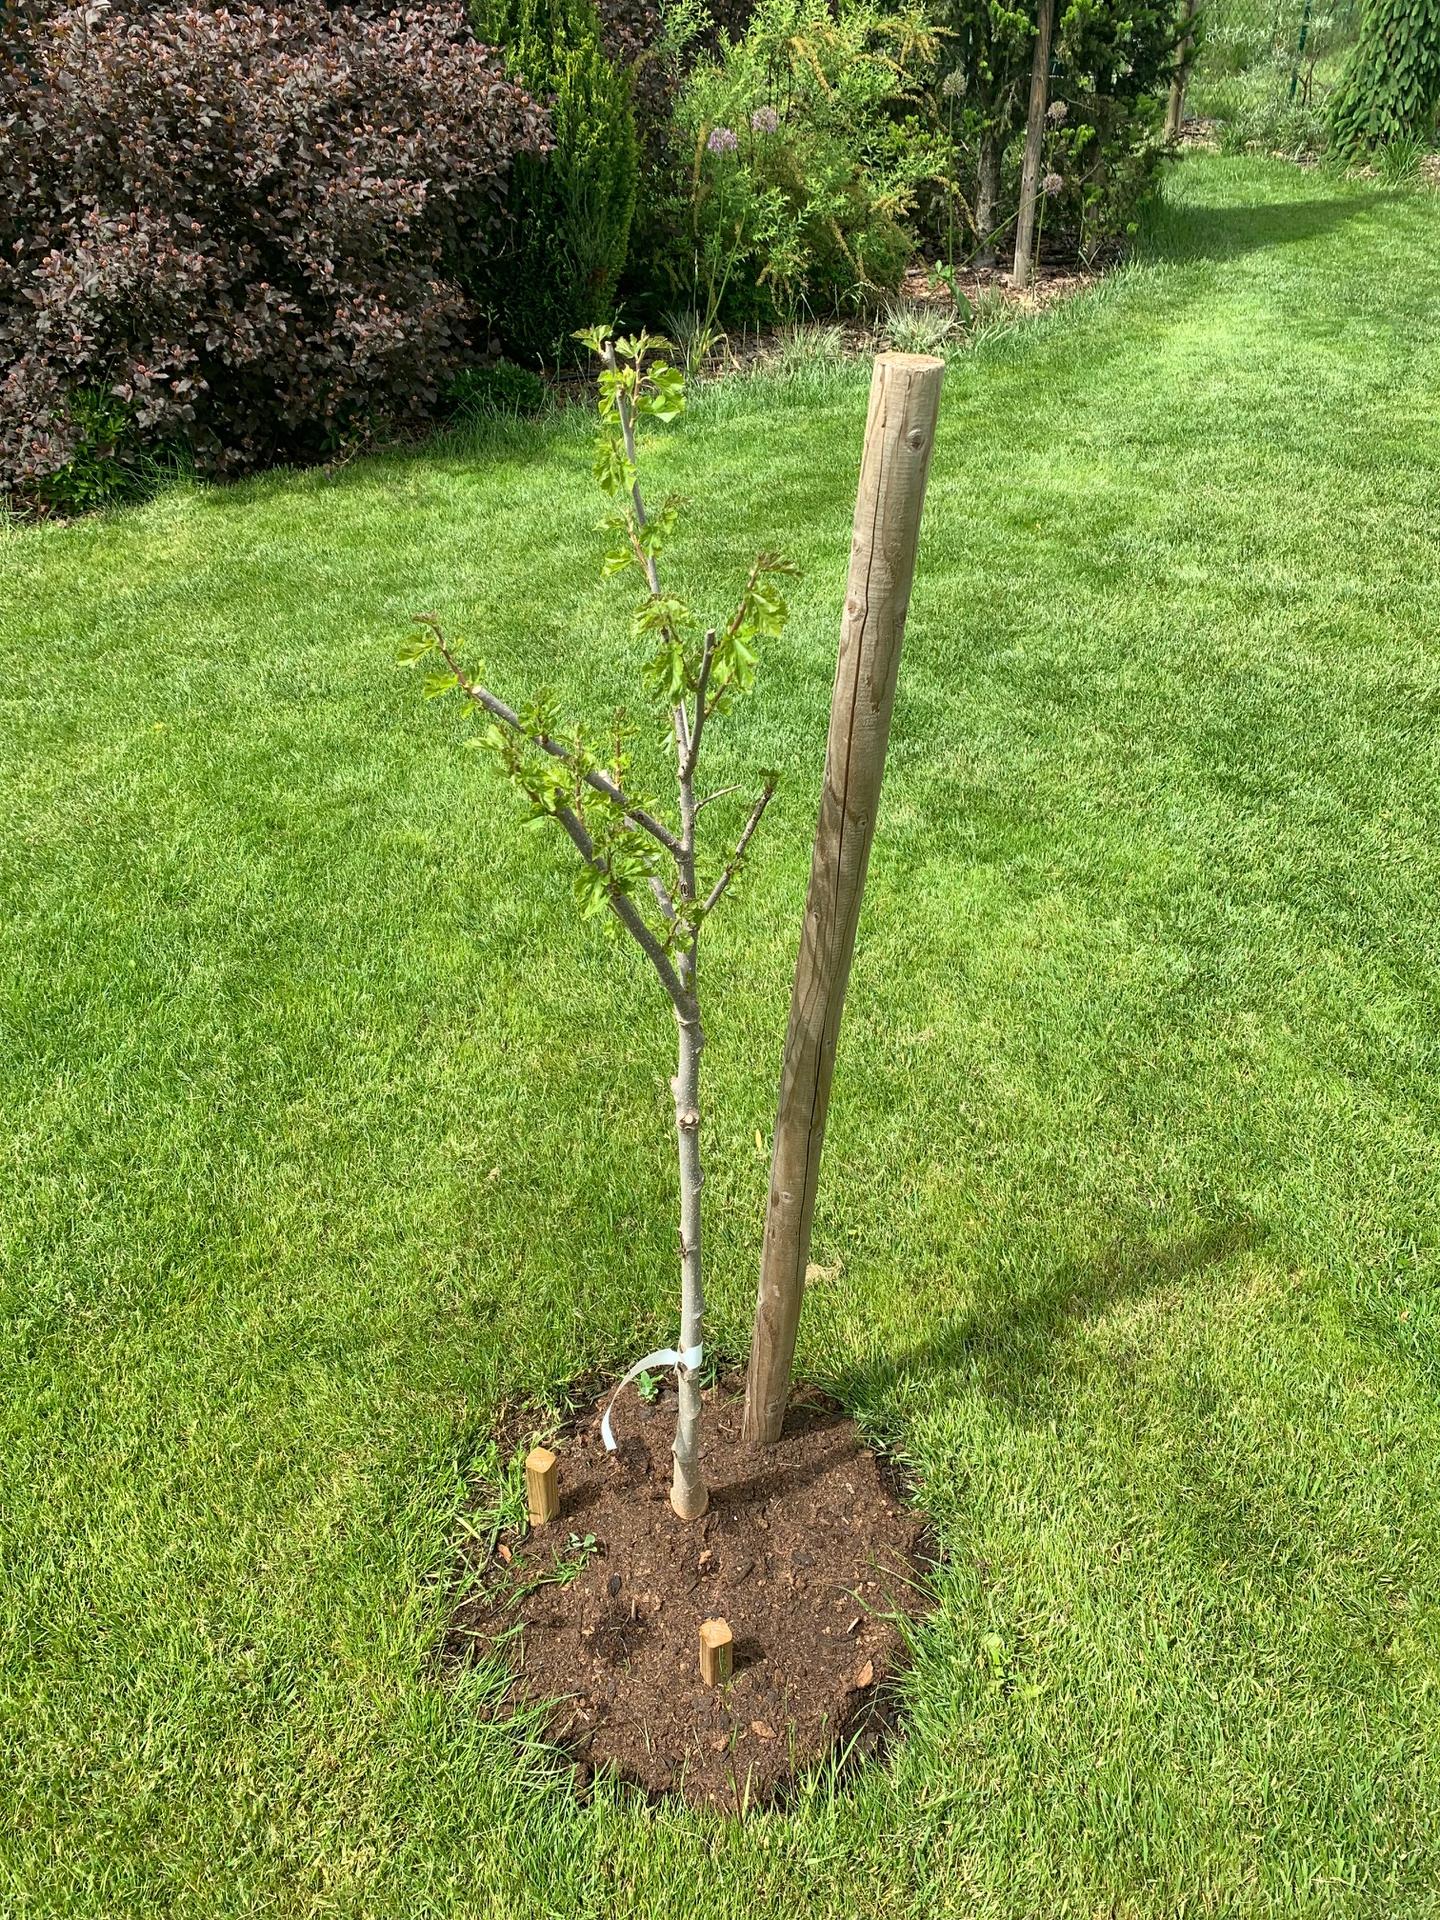 Zahrada květen 2022 - 5 let od výsadby - Moruše bílá - strom, který si vybral syn